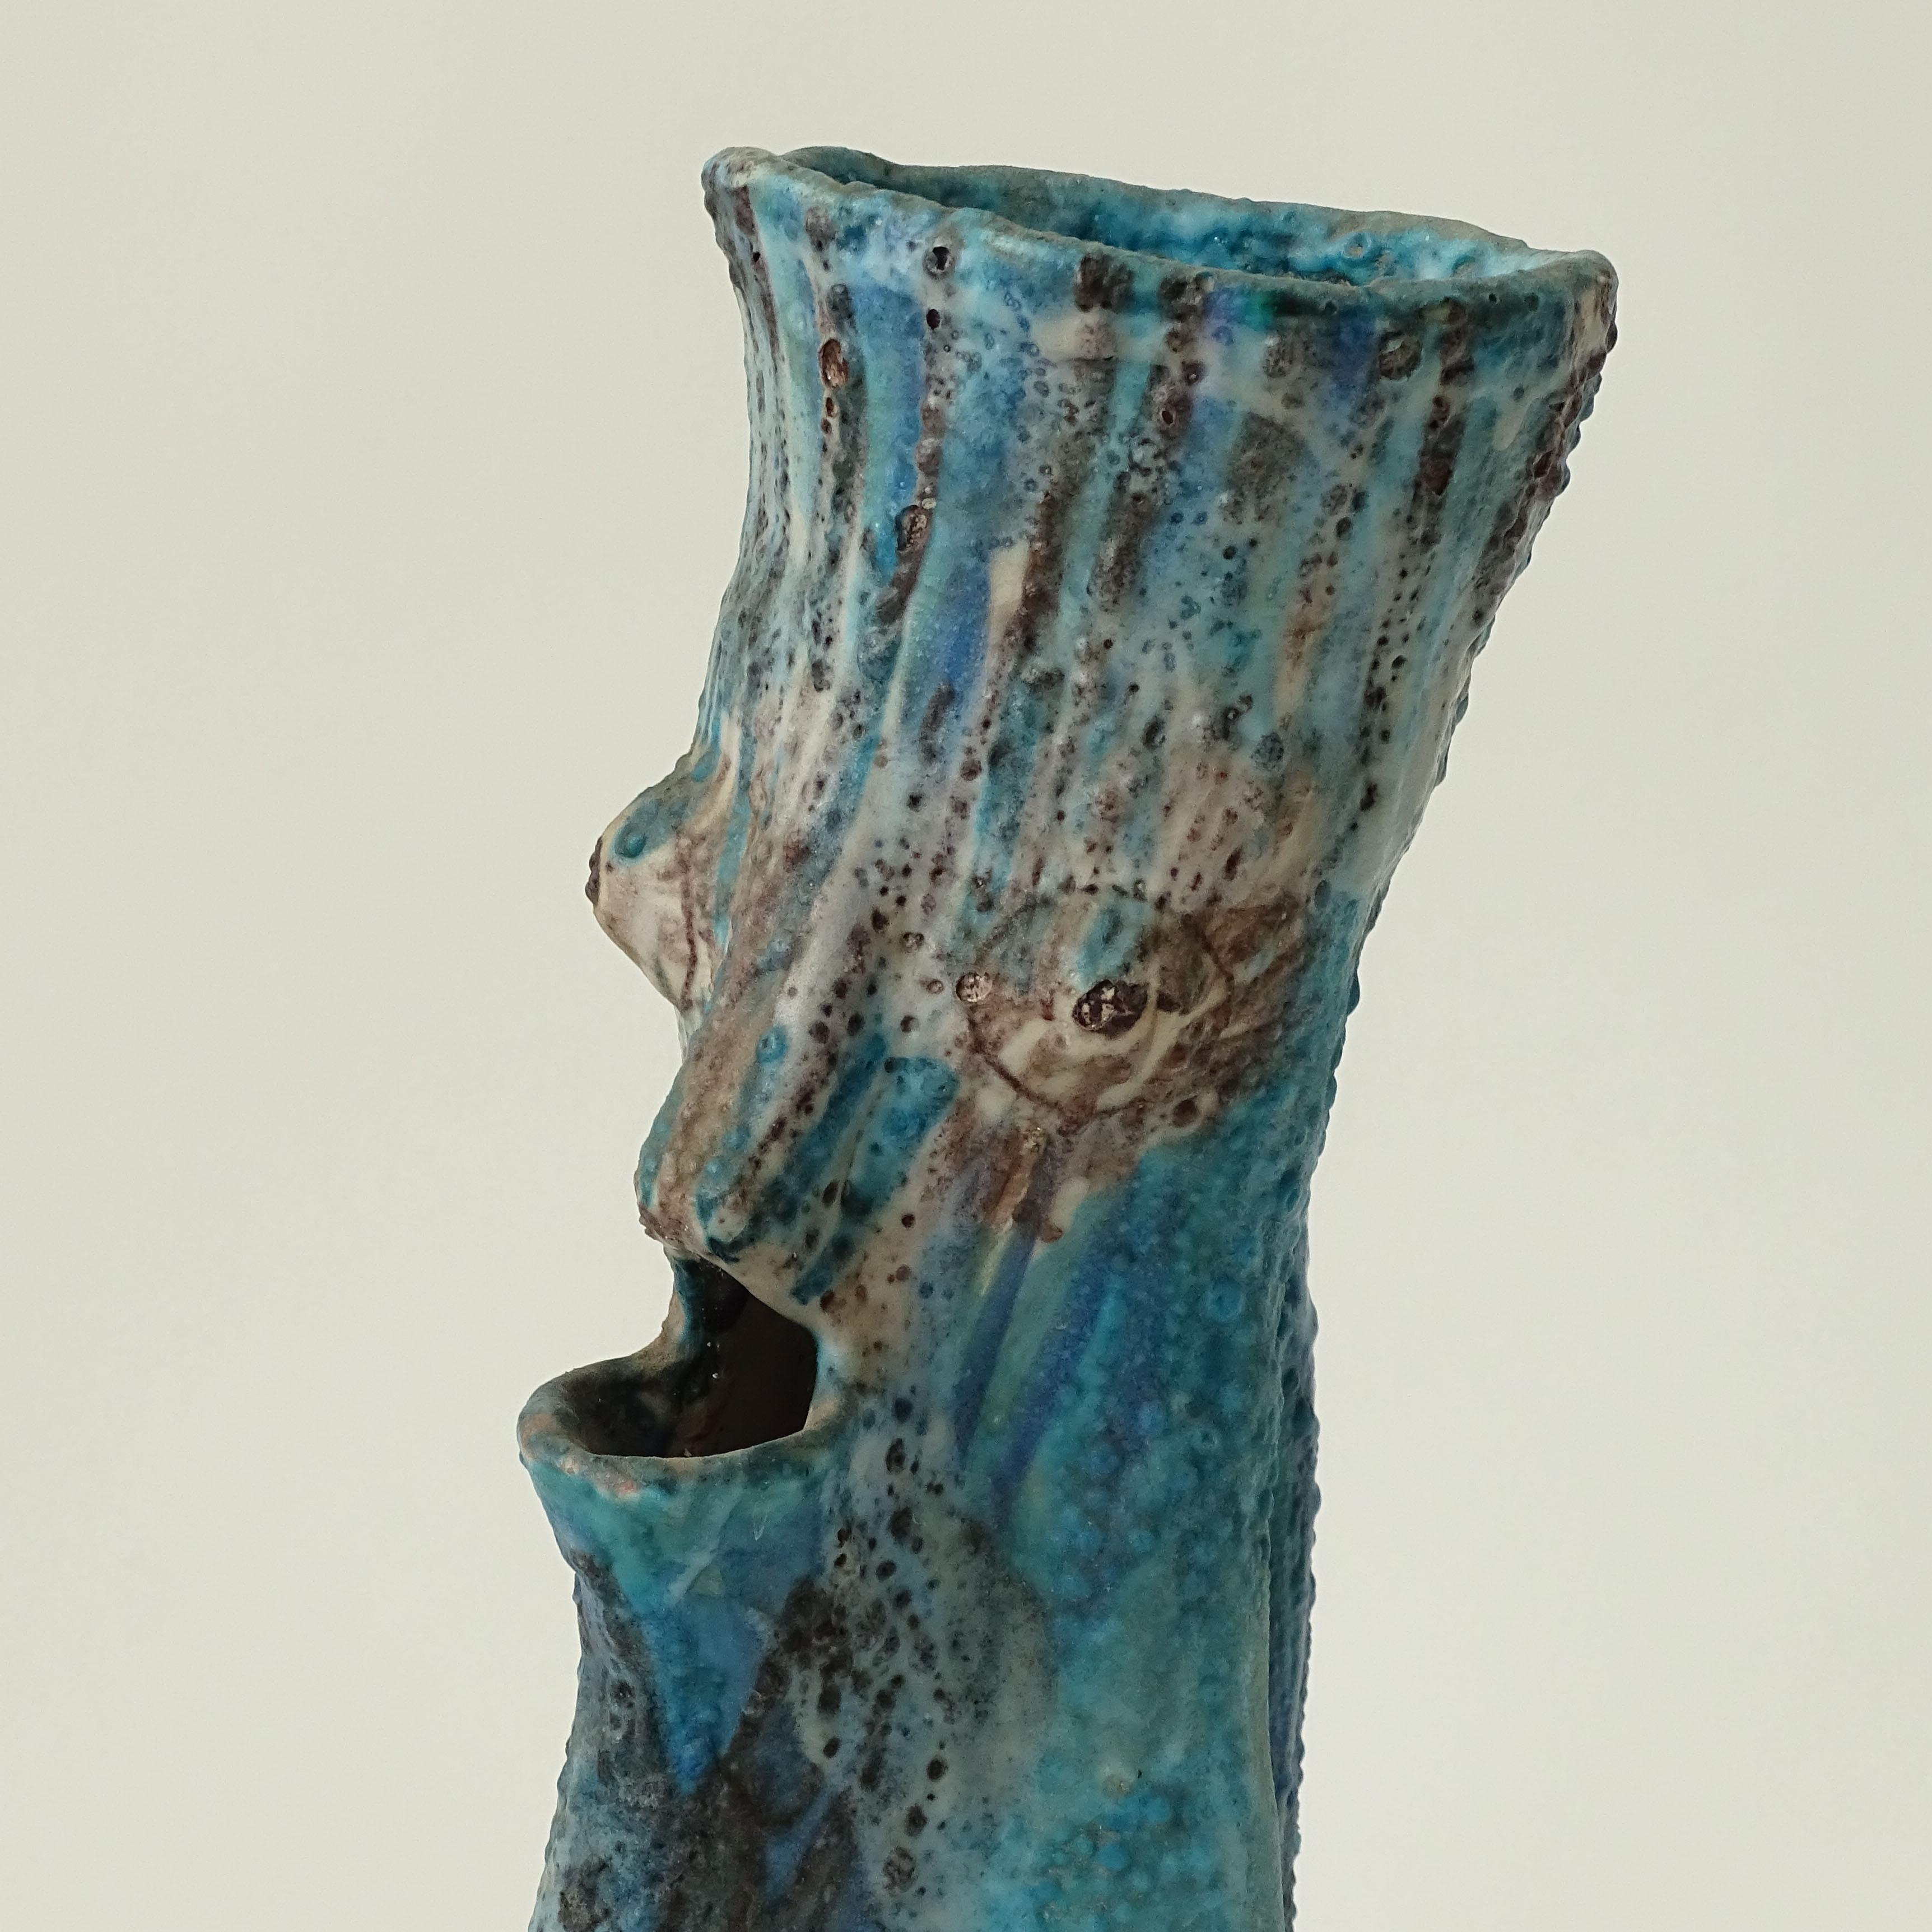 Groteske figurale Vase in Krugform.
Ceramiche Artistiche Solimene, Vietri,
Steingut, türkisblau und lila auf weiß glasiert.
Gezeichnet: C.A.S. VIETRI ITALY.